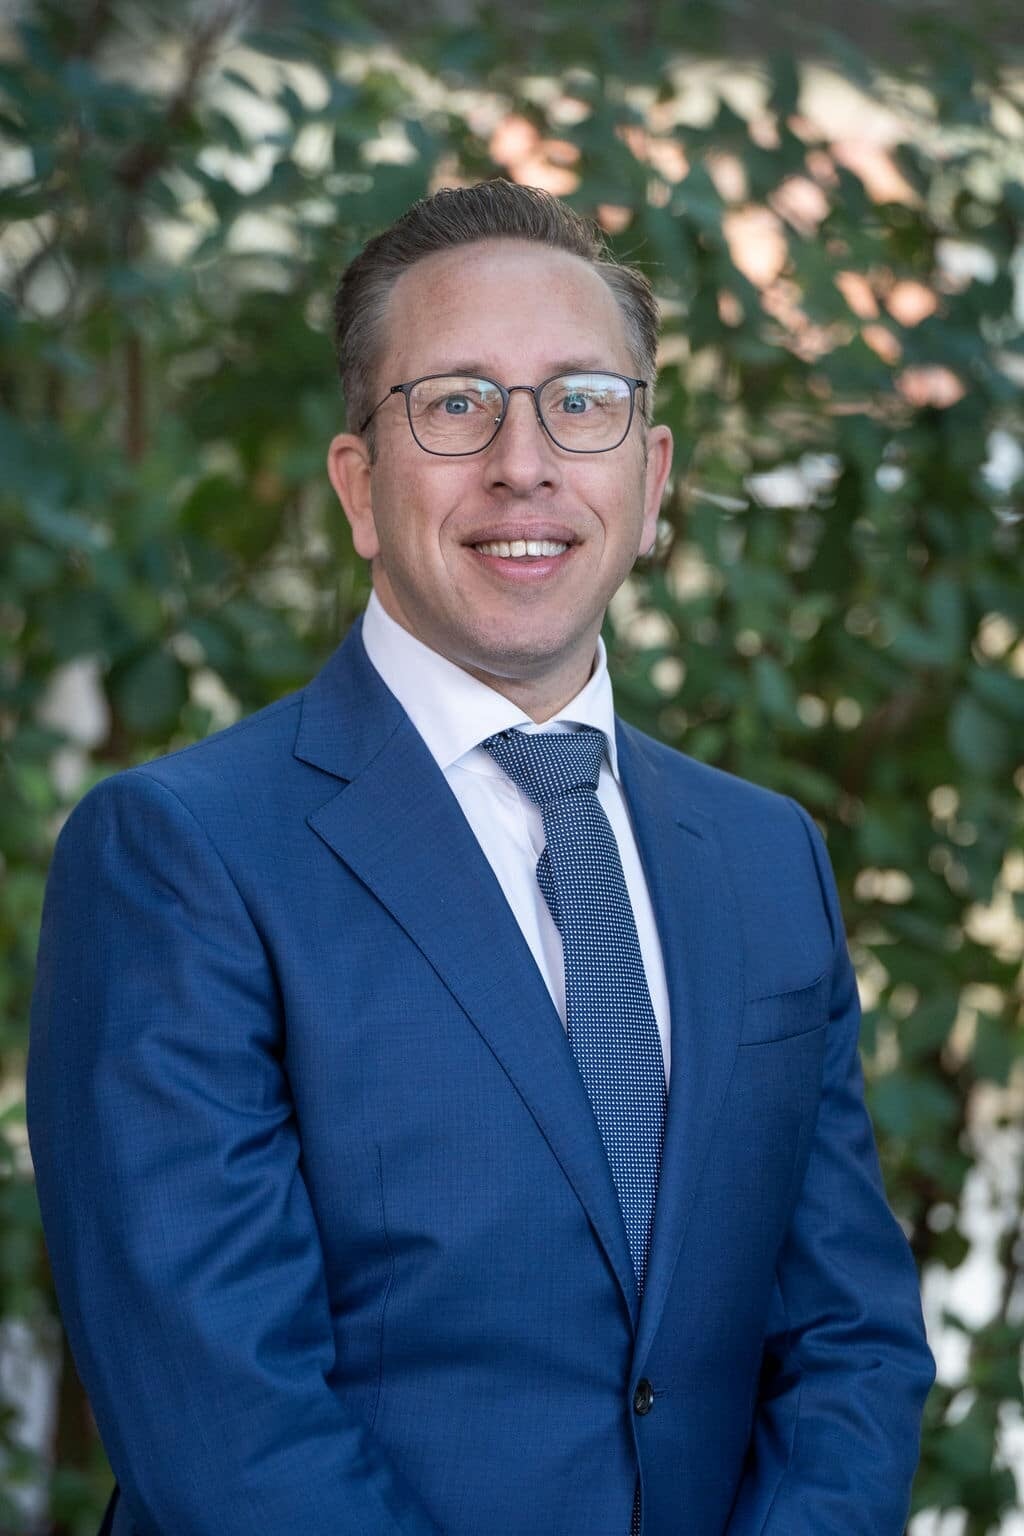 VVD'er René de Koff uit Holten is de nieuwe wethouder cultuur en financiën van Rijssen-Holten.